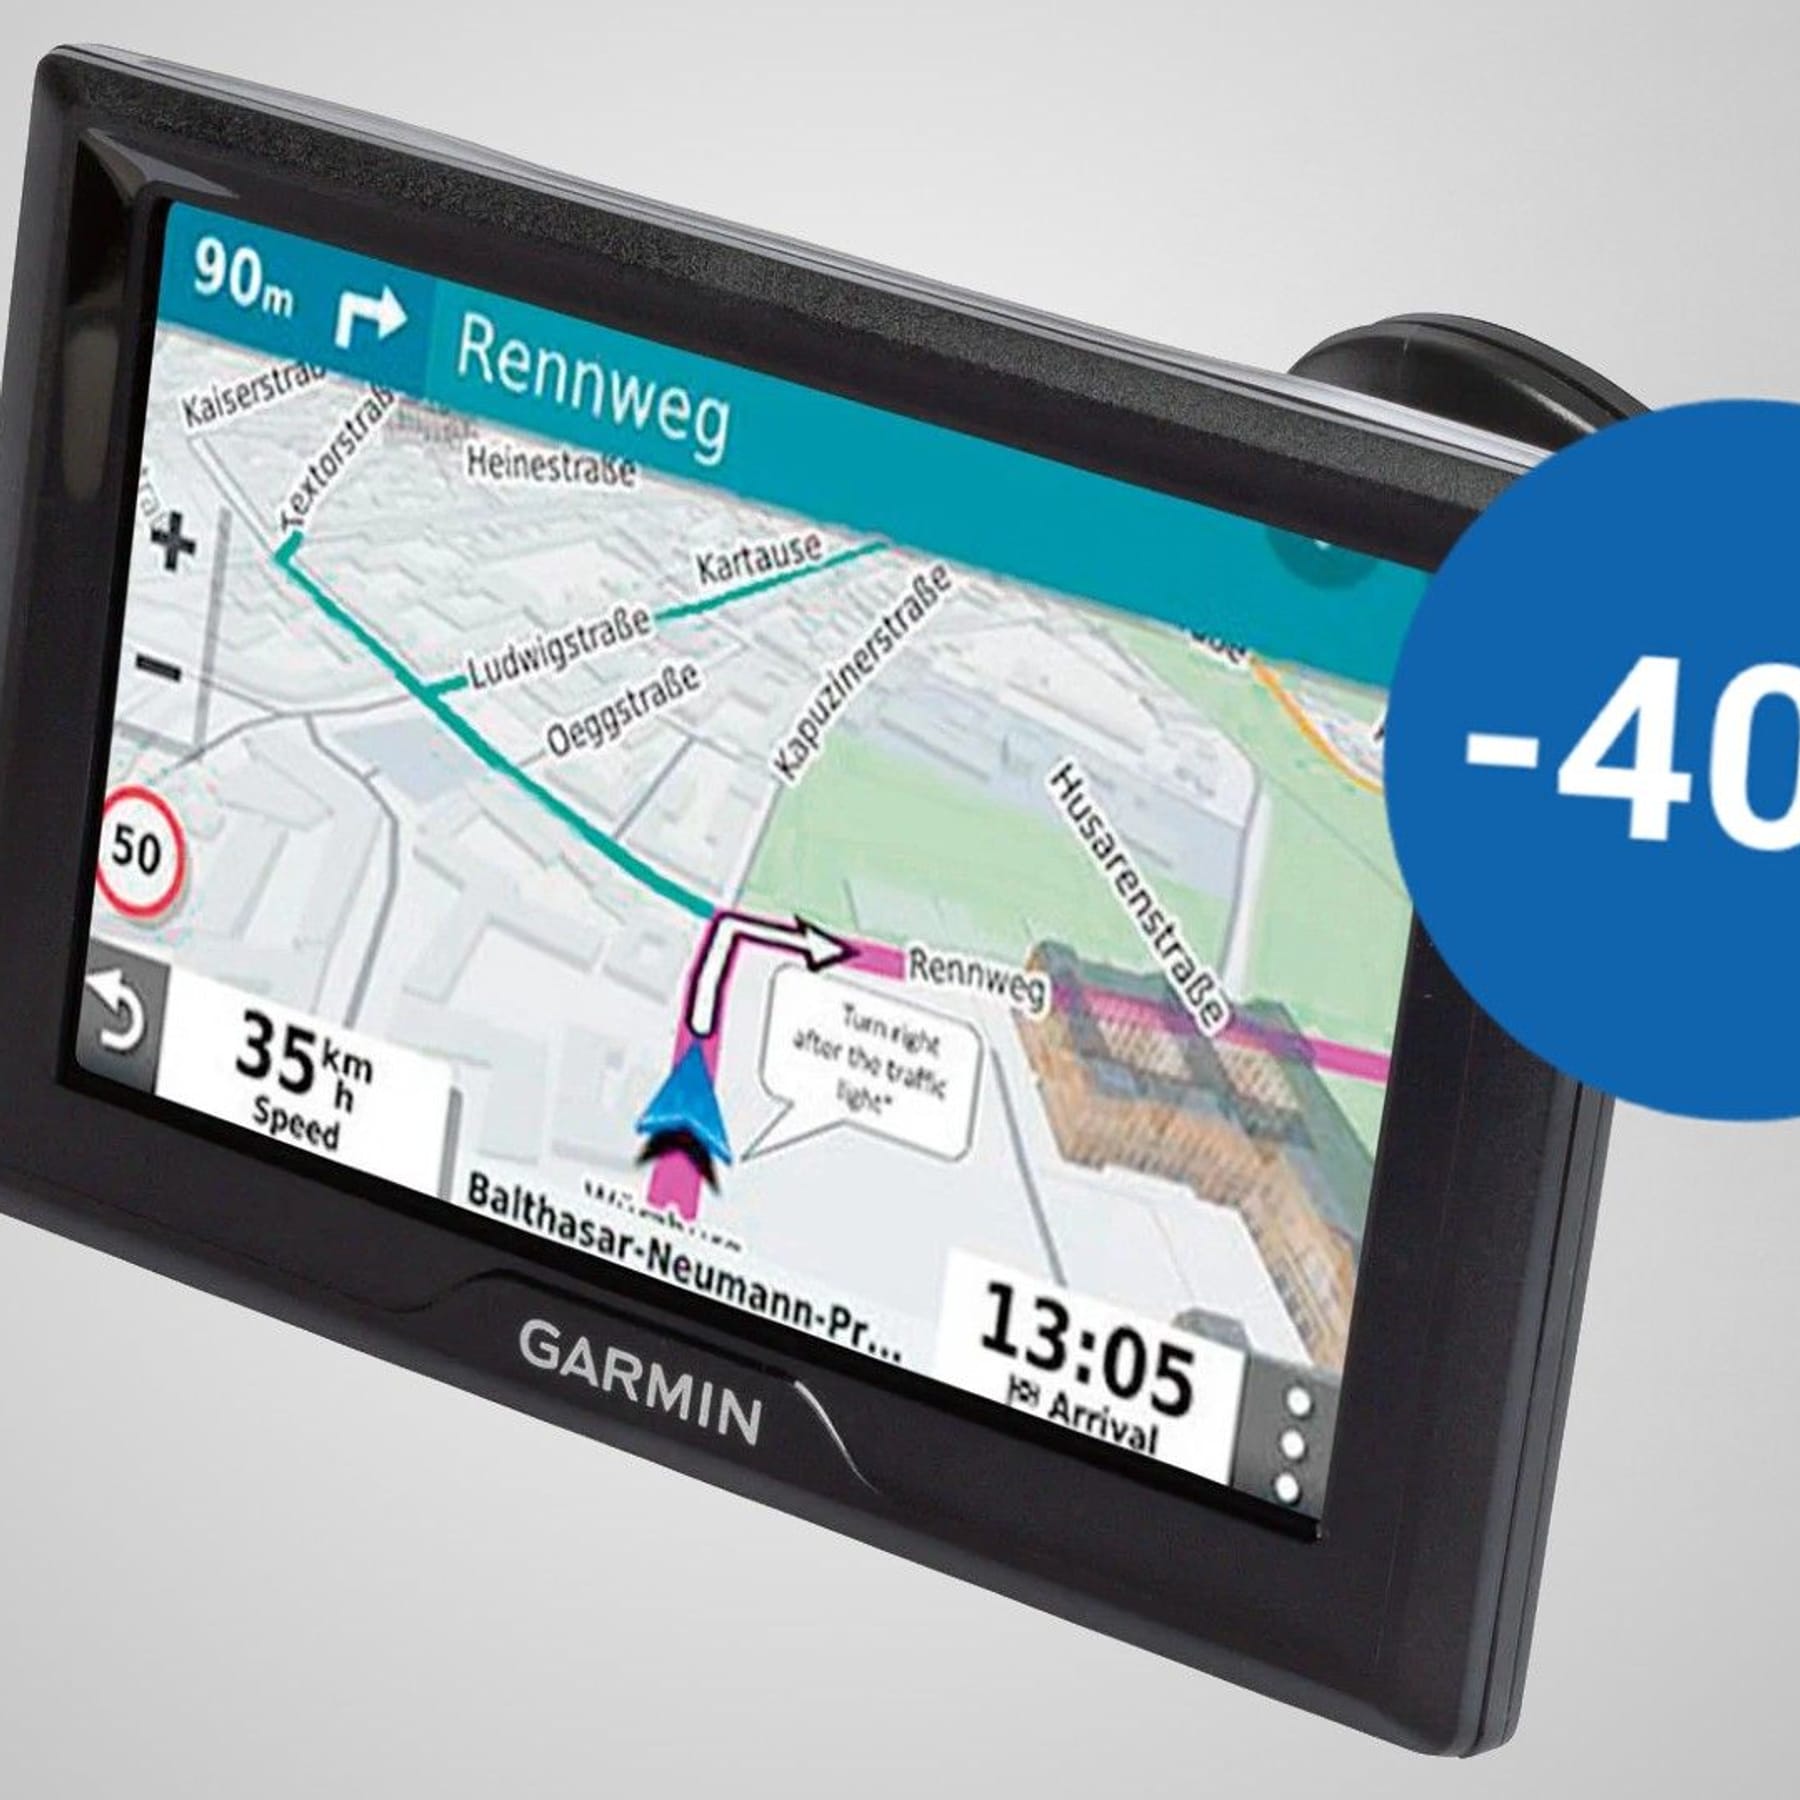 Garmin-Navigationsgerät jetzt bei Lidl zum Tiefpreis erhältlich